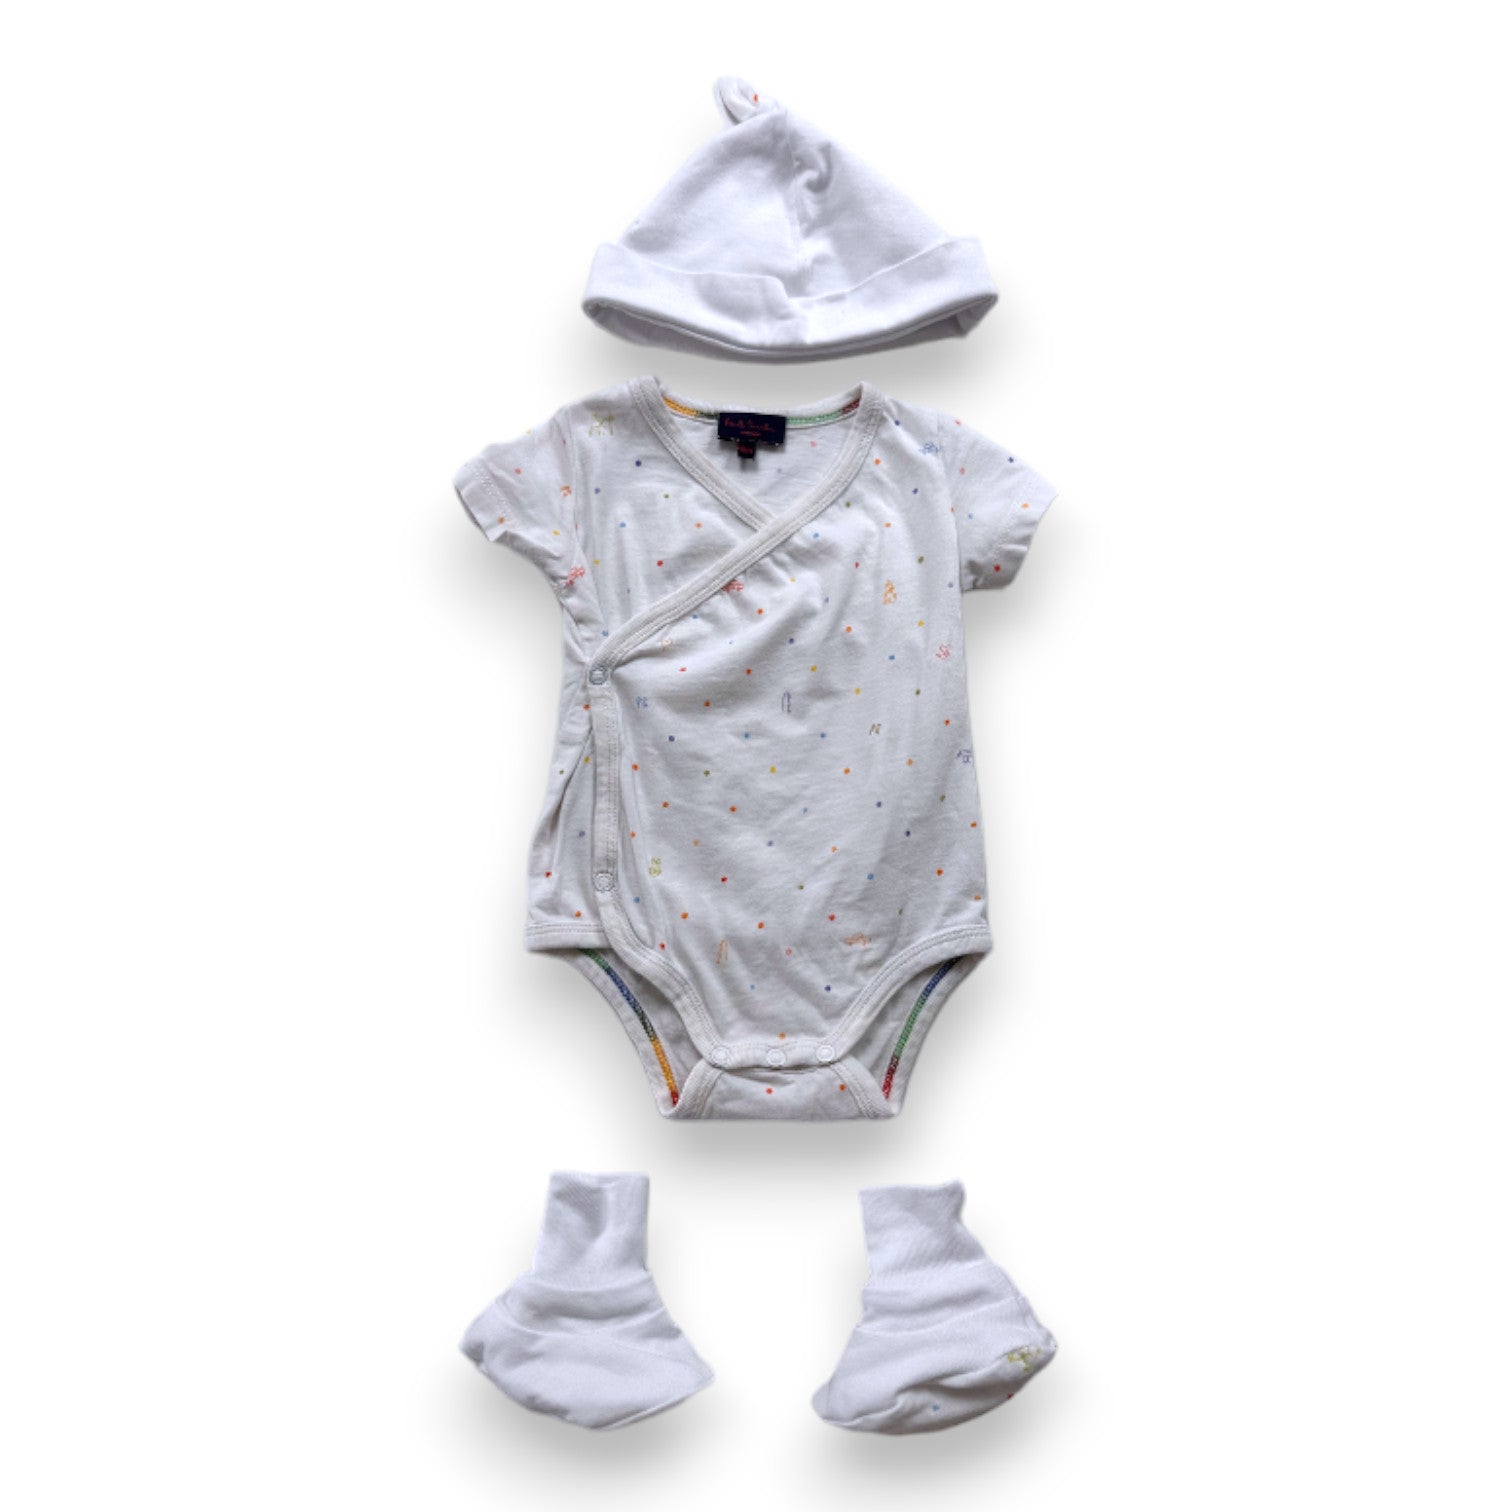 PAUL SMITH - Ensemble body chaussons et bonnet blanc avec imprimés - 6 mois